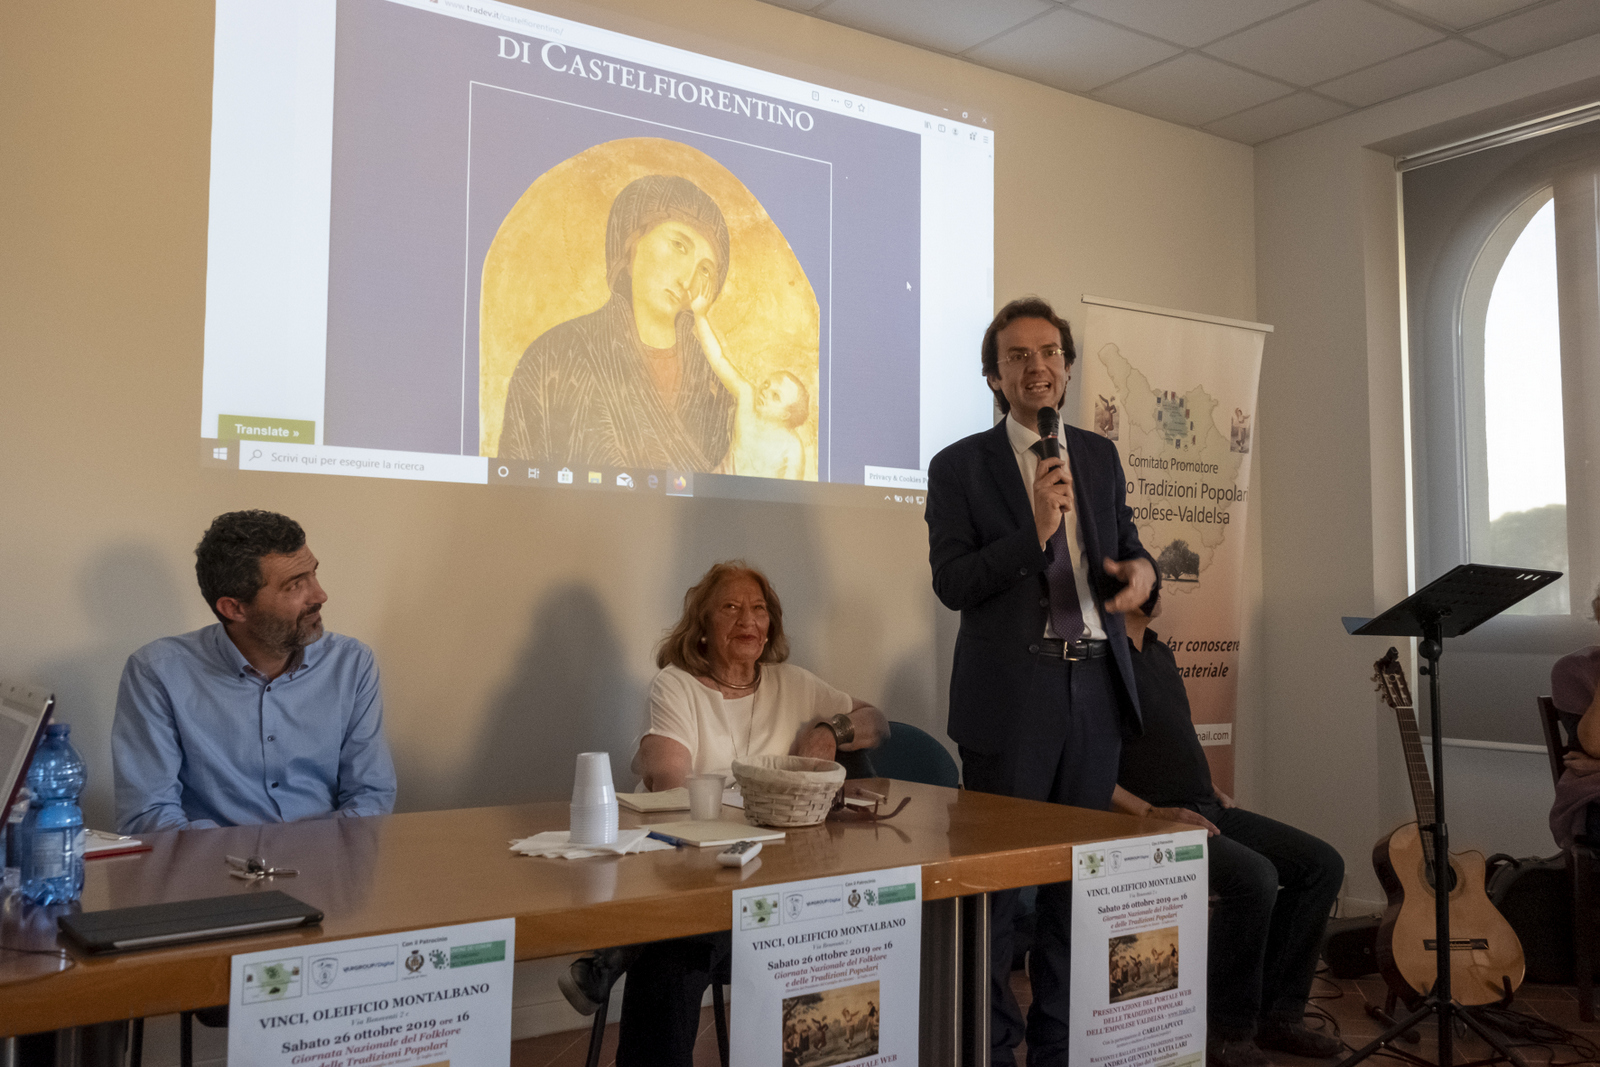 26/10/2019 - VINCI - Saluto del Consigliere regionale Enrico SOSTEGNI